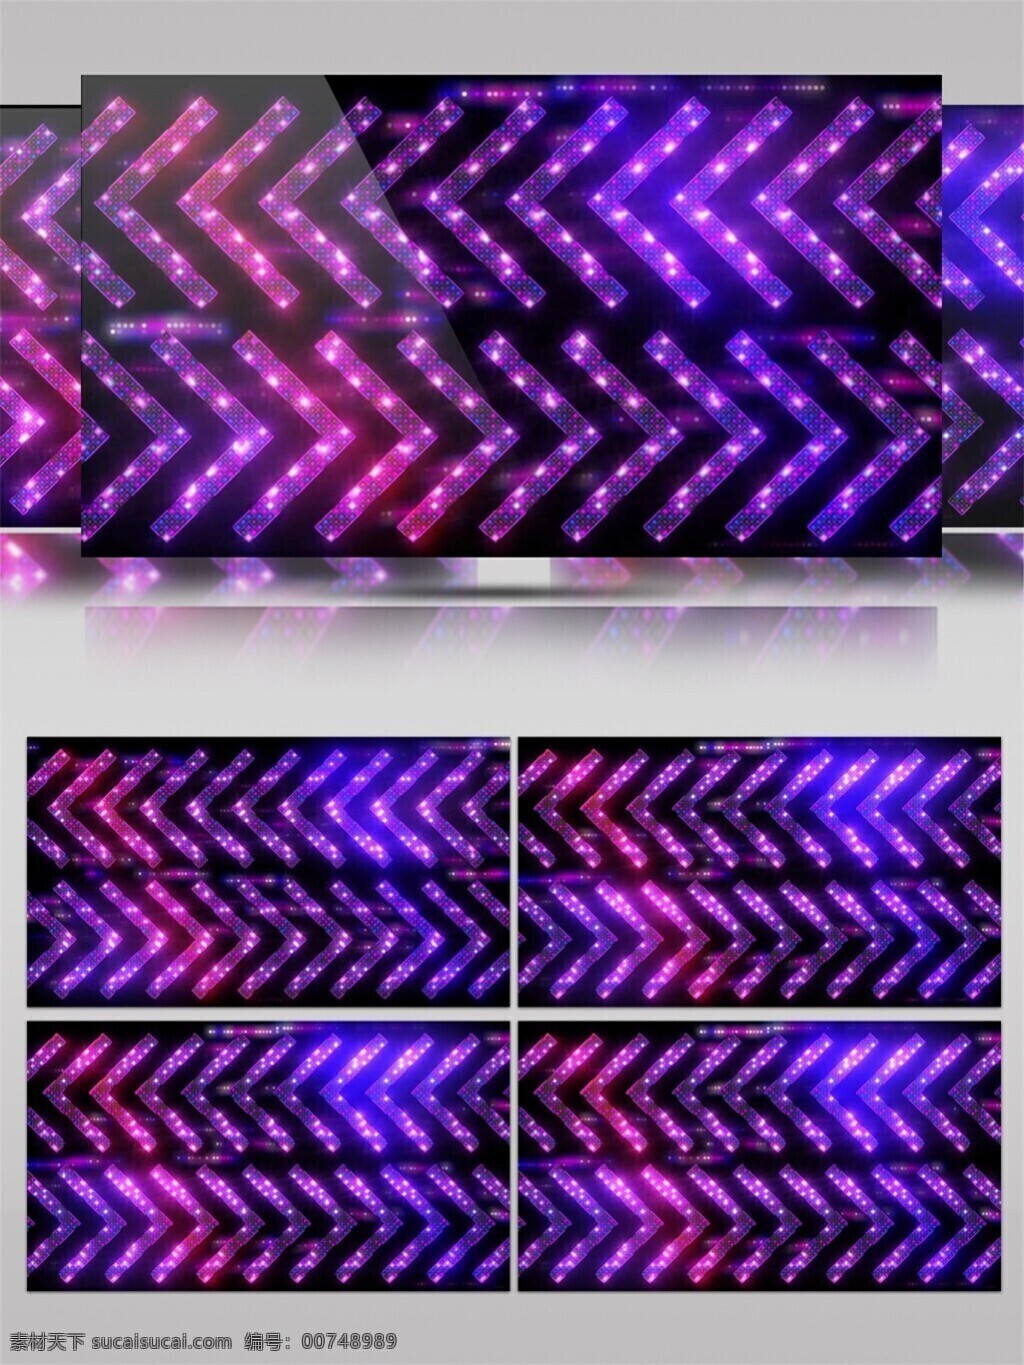 3d视频素材 电脑屏幕保护 高清视频素材 光束 星际 紫色 紫光 动感 三角 动态 视频